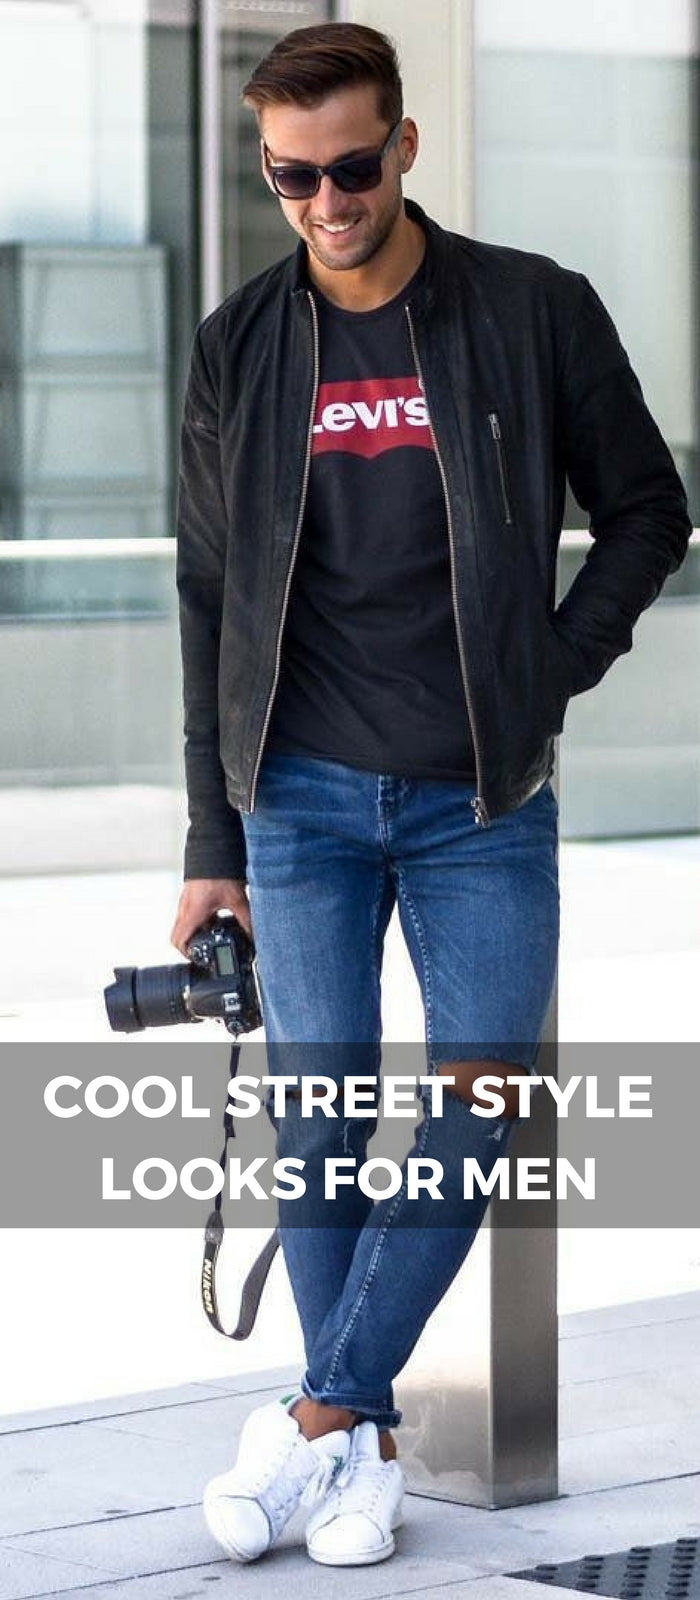 Street style looks for men